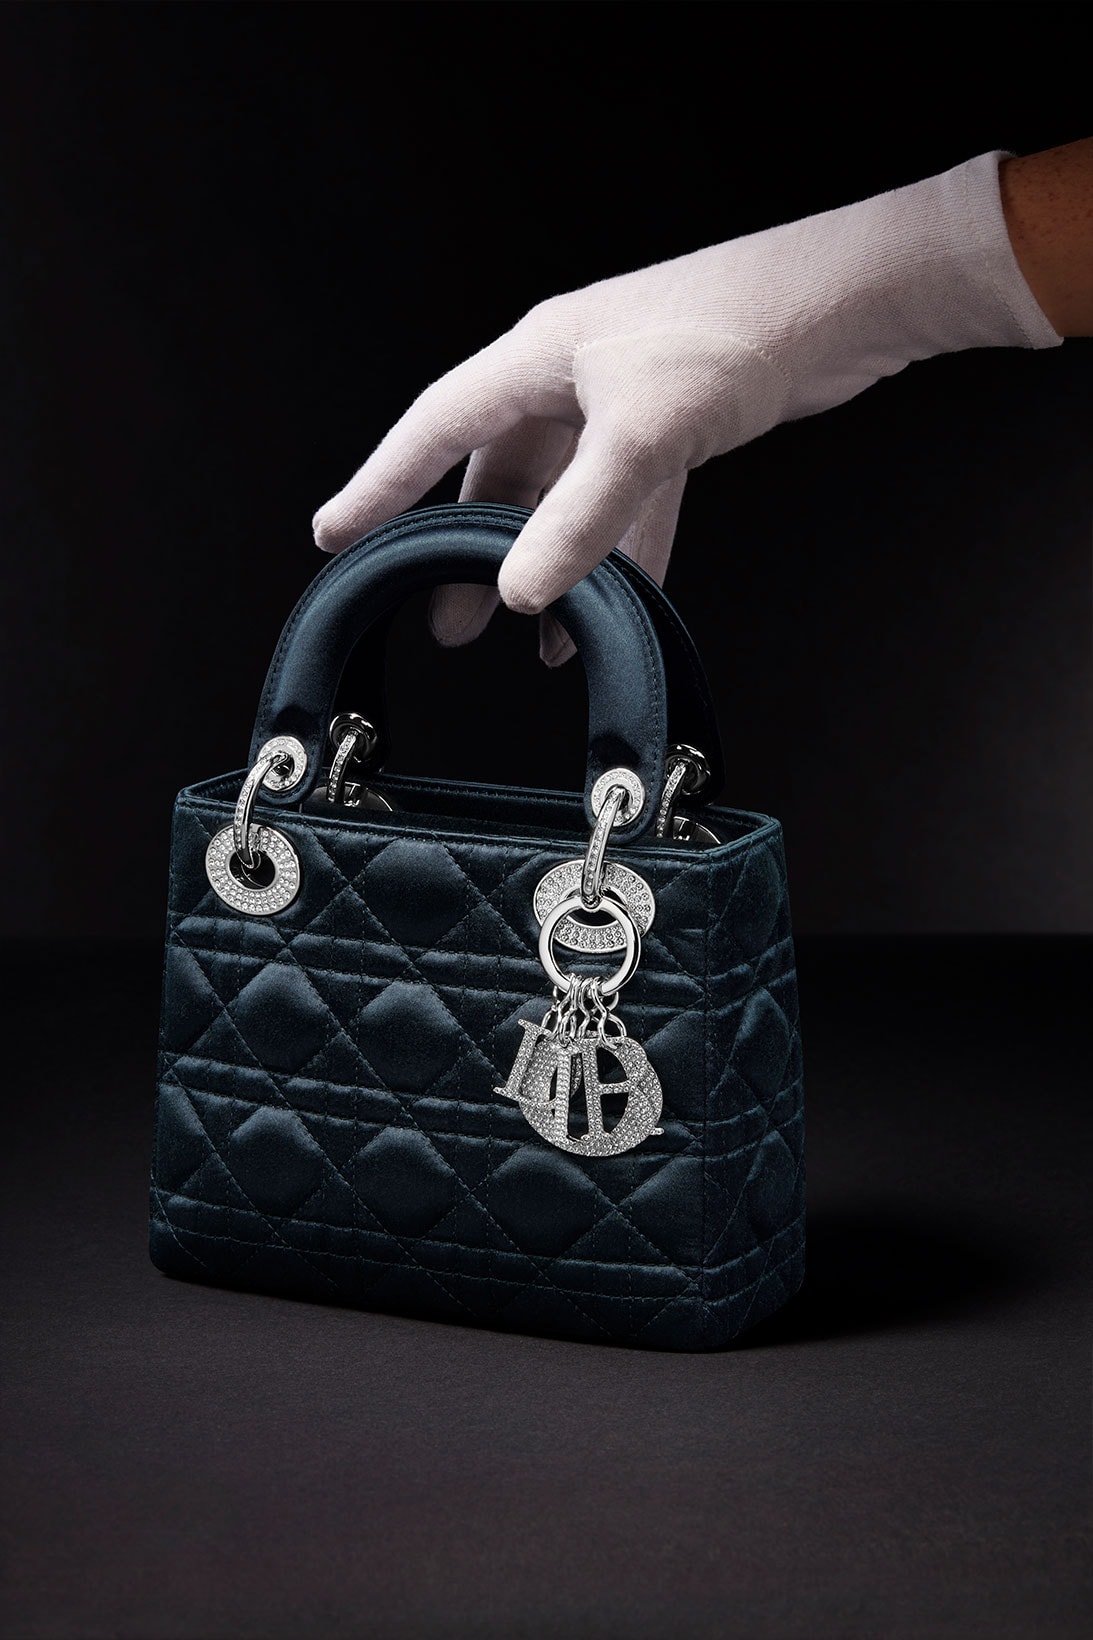 Lady Dior Princess Diana Exclusive Re-Edition Handbags Release 